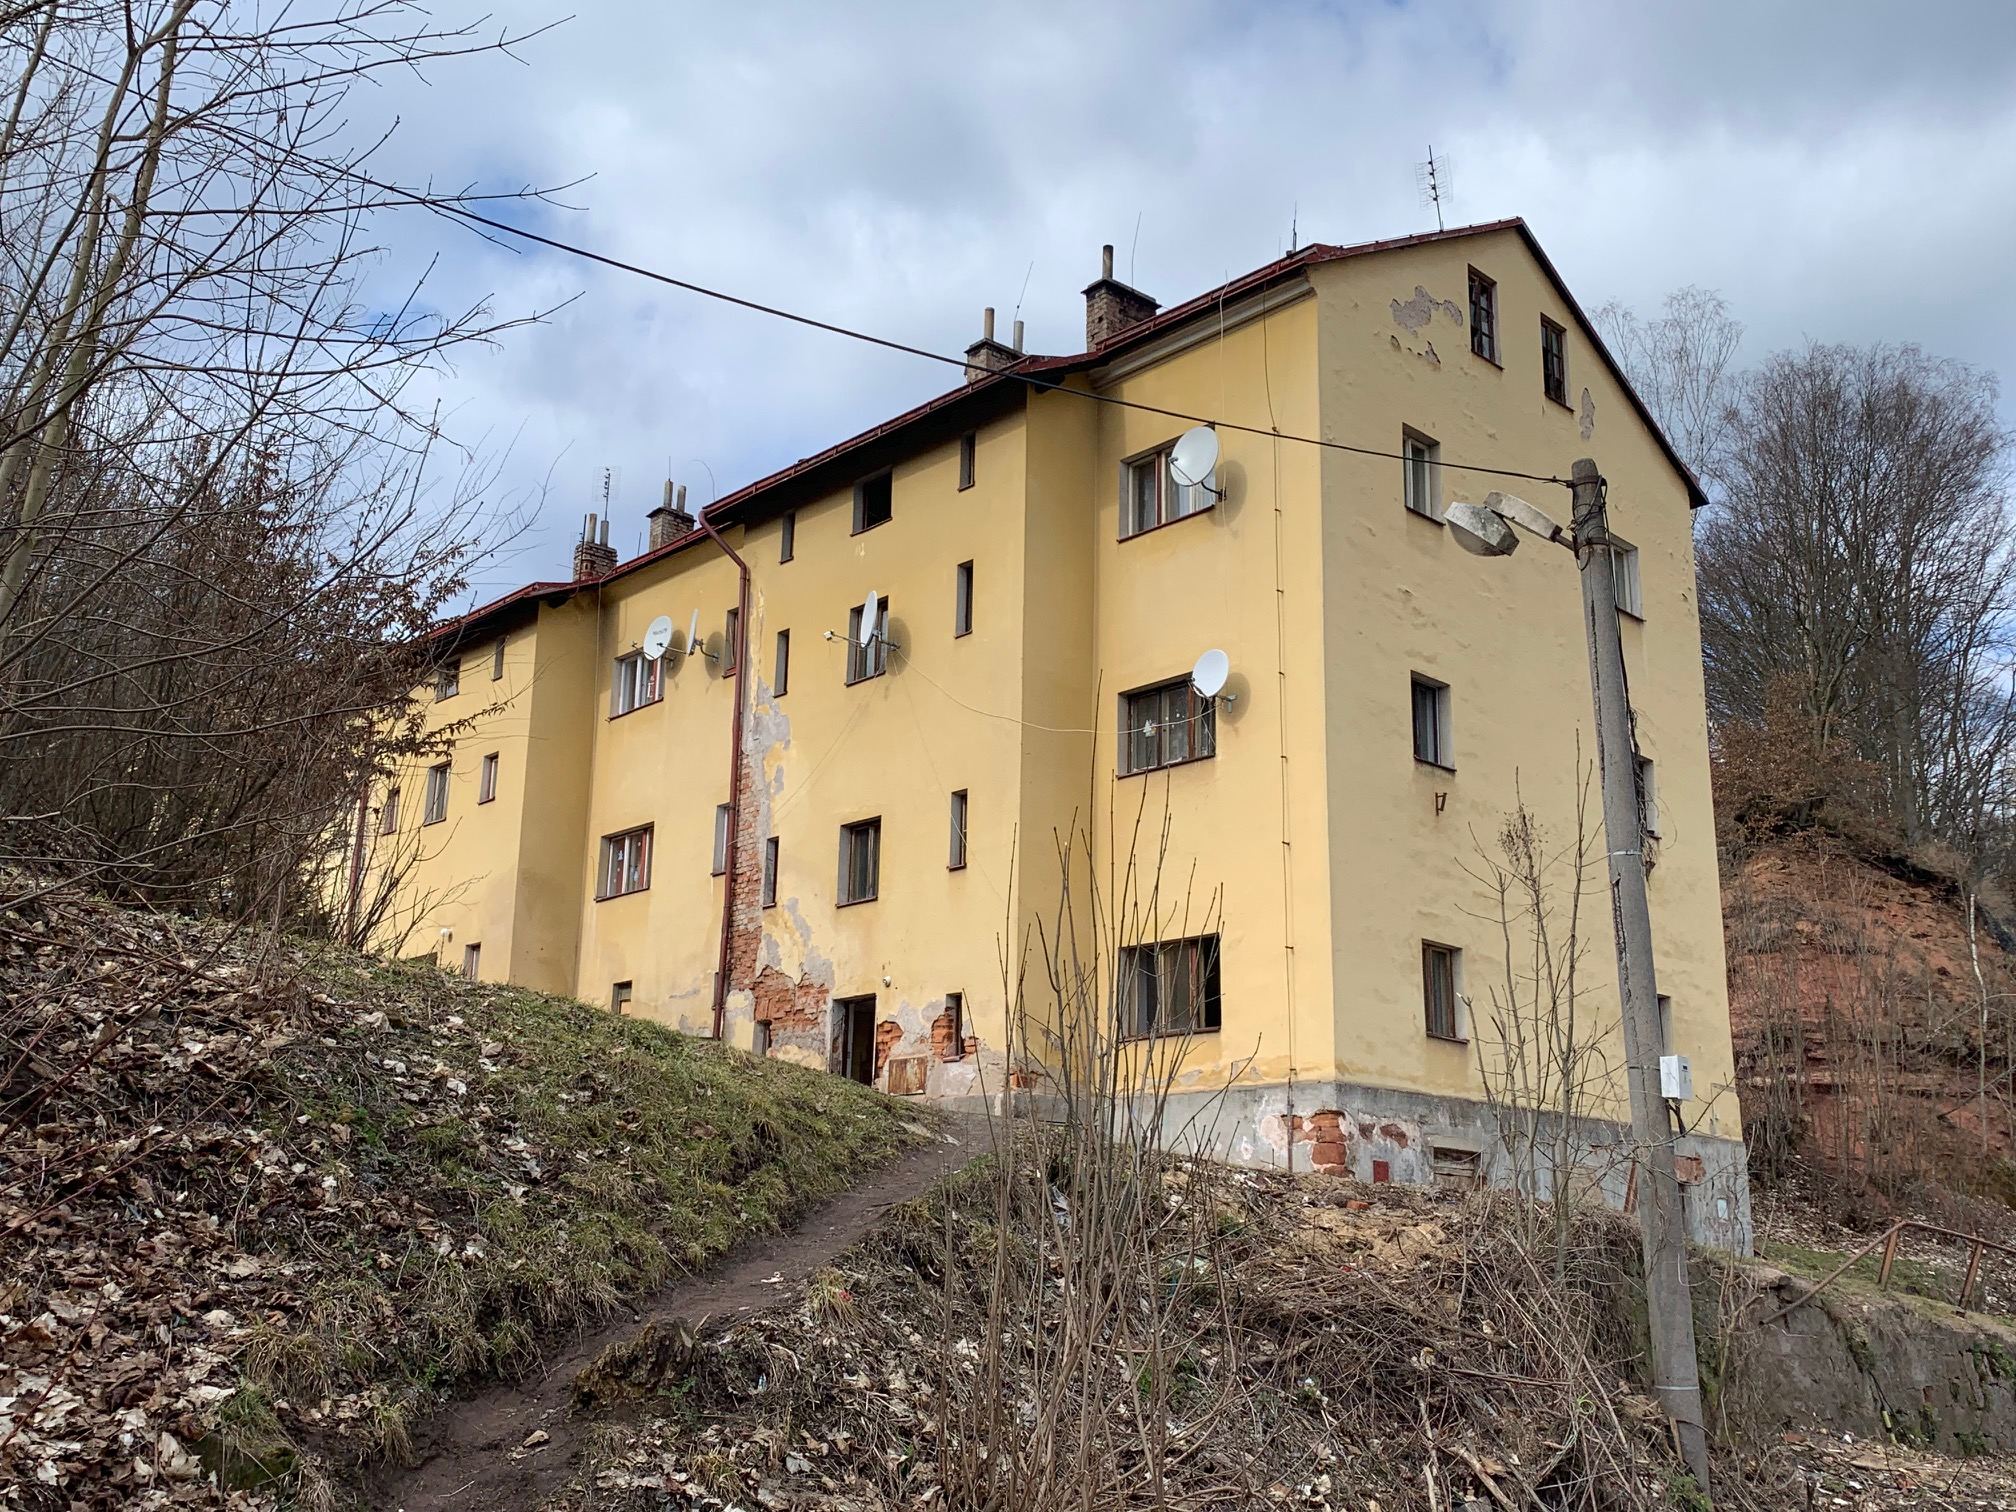 Desítky obyvatel bytového domu v Úpici si musí hledat nové ubytování